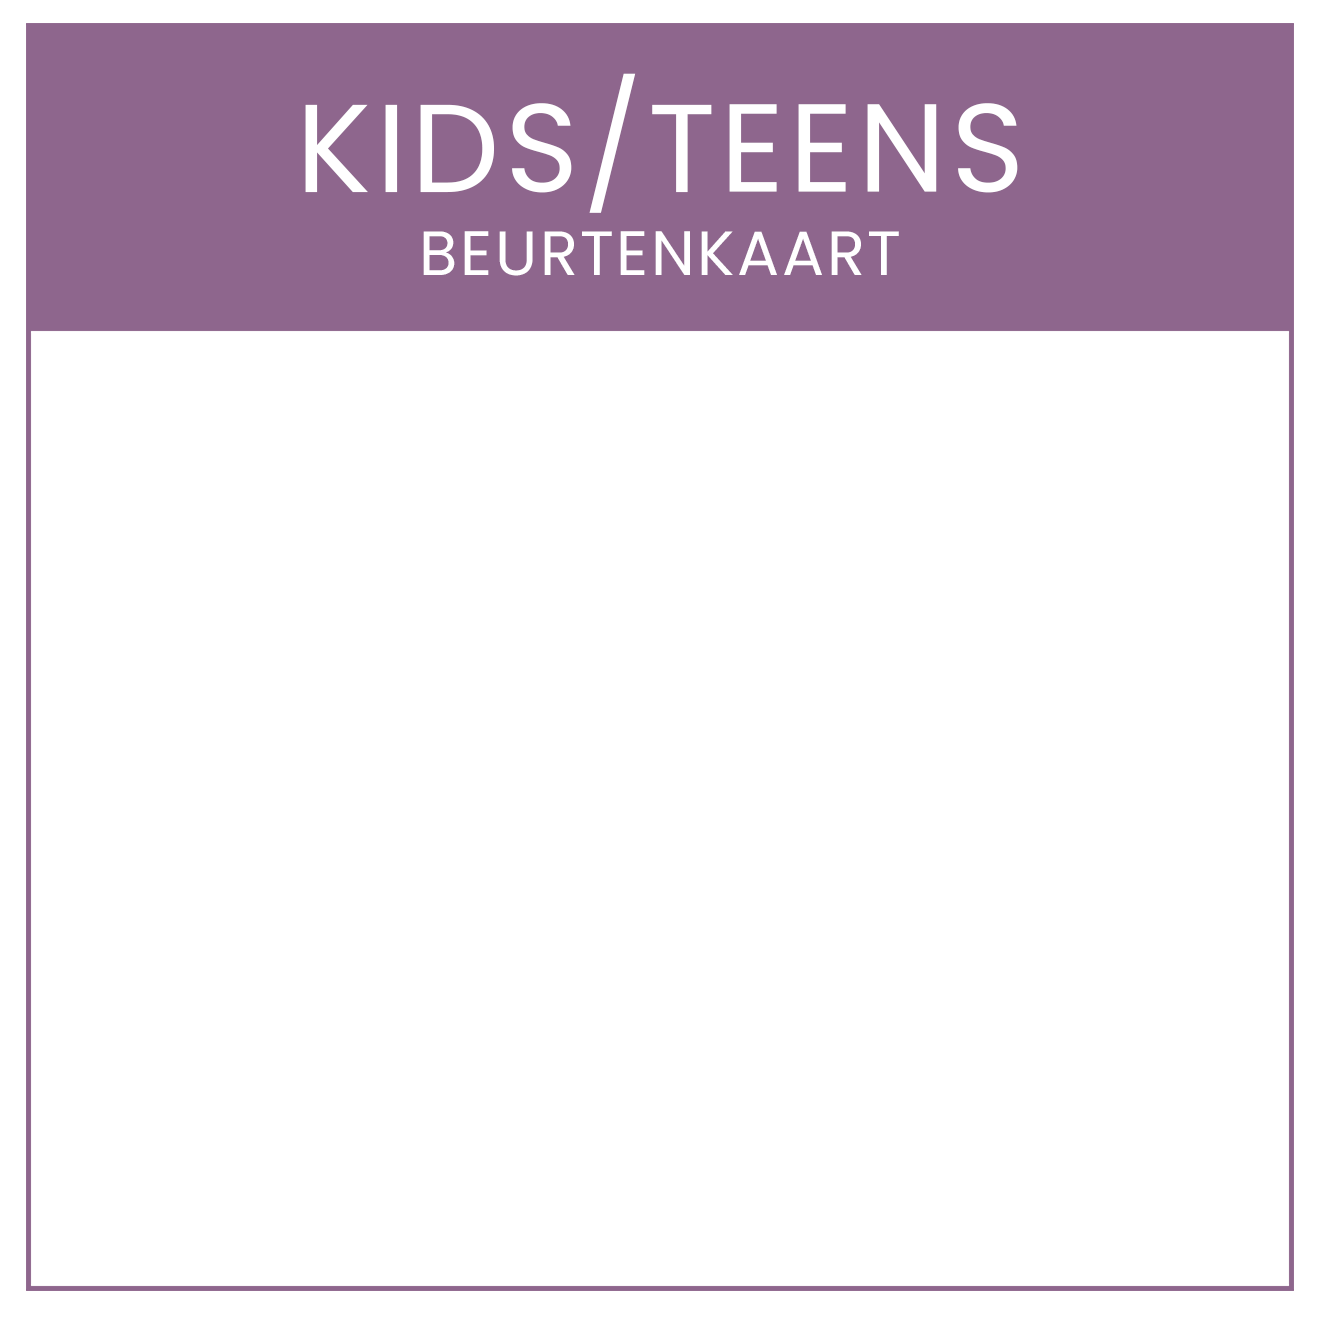 BEURTENKAART KIDS/TEENS